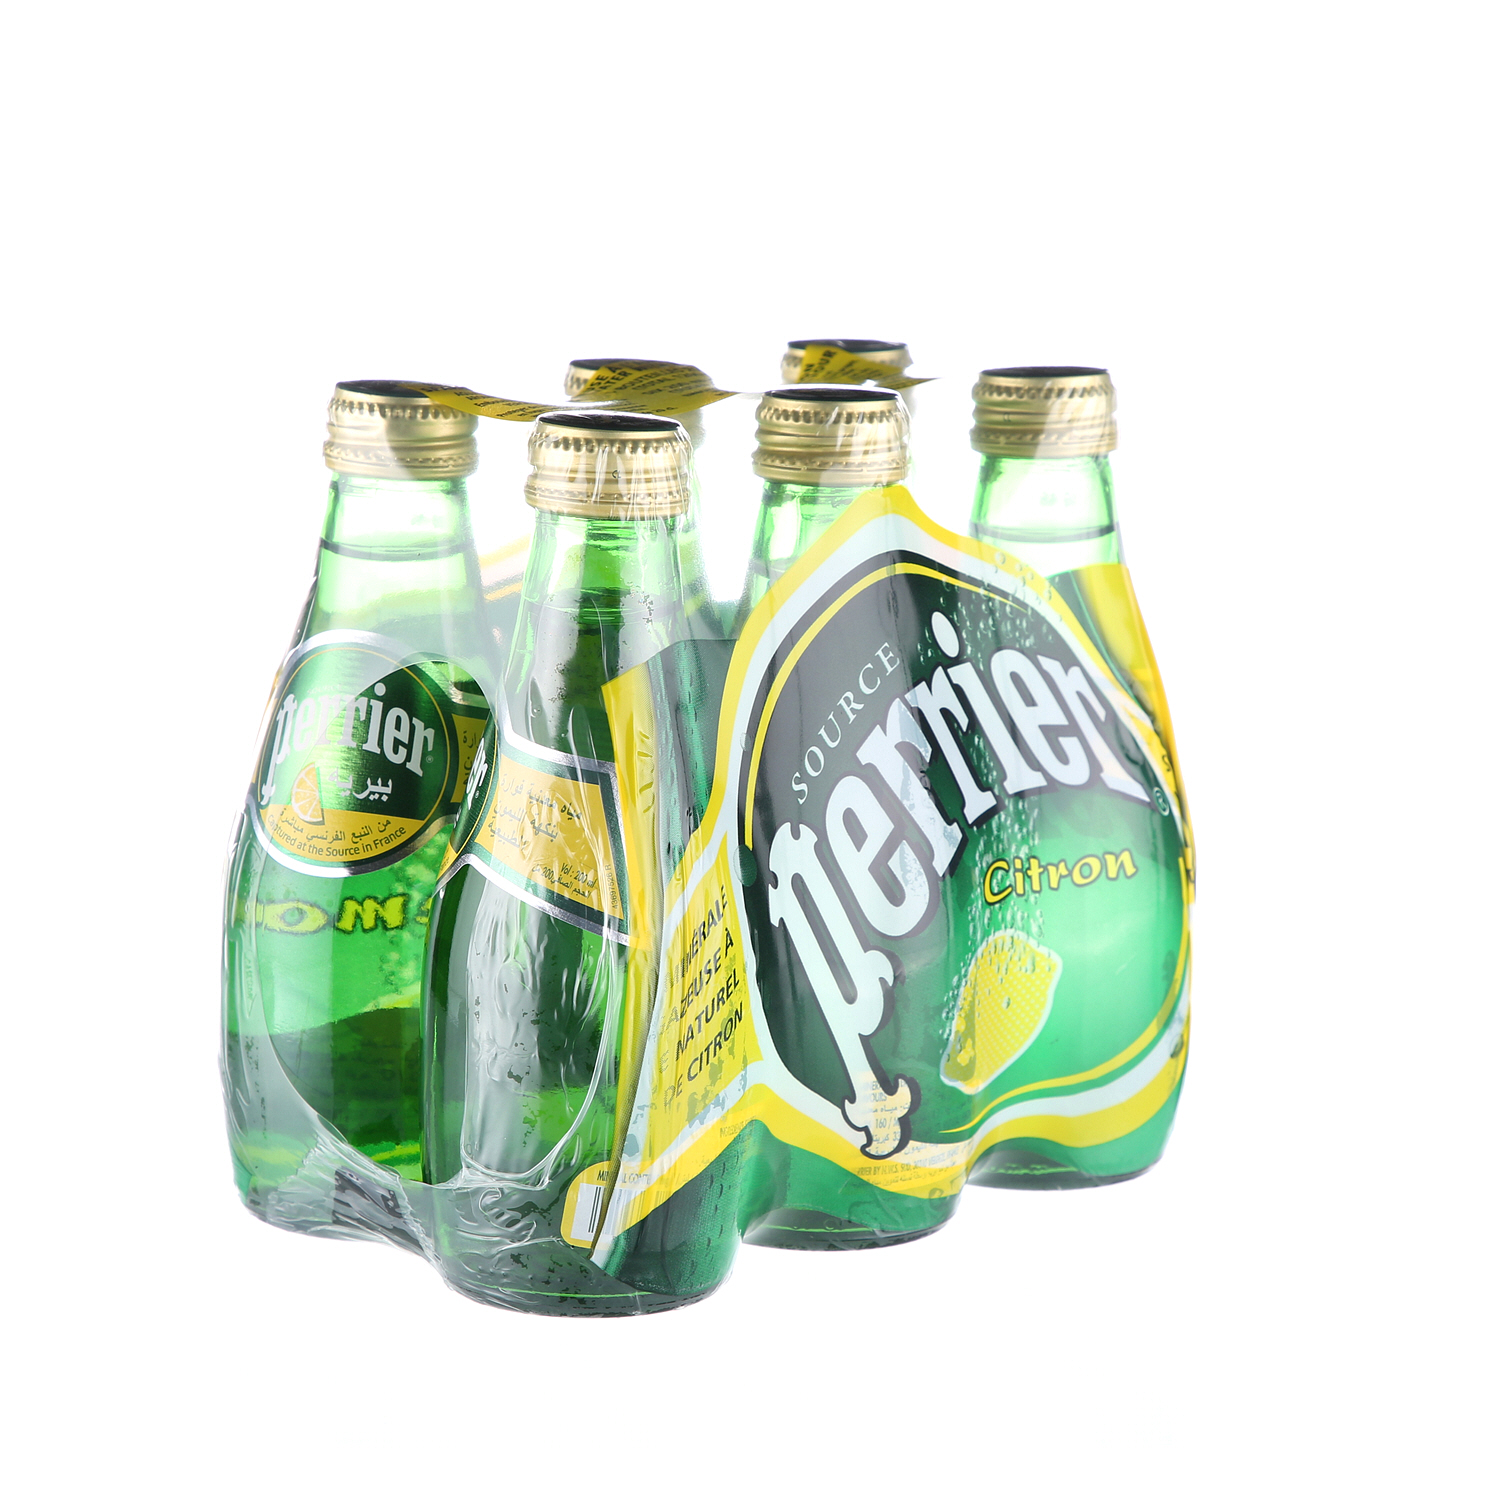 Perrier Water Lemon 200 ml × 6 Pack